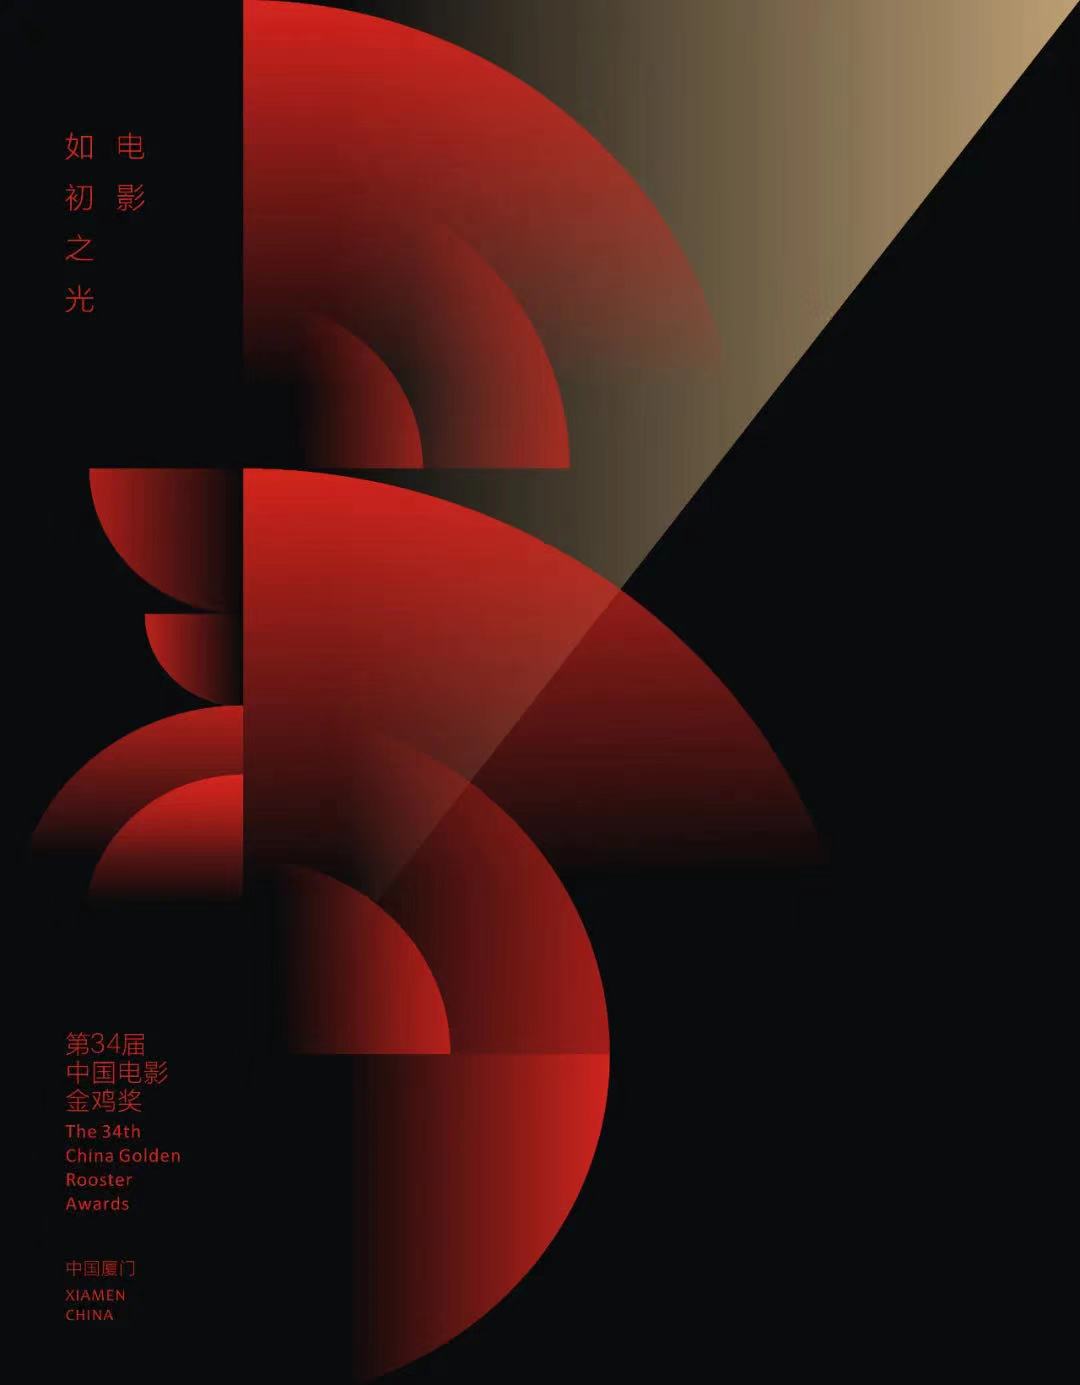 《雄雞凝視》等作品入圍第34屆中國電影金雞獎海報設計大賽-圖9